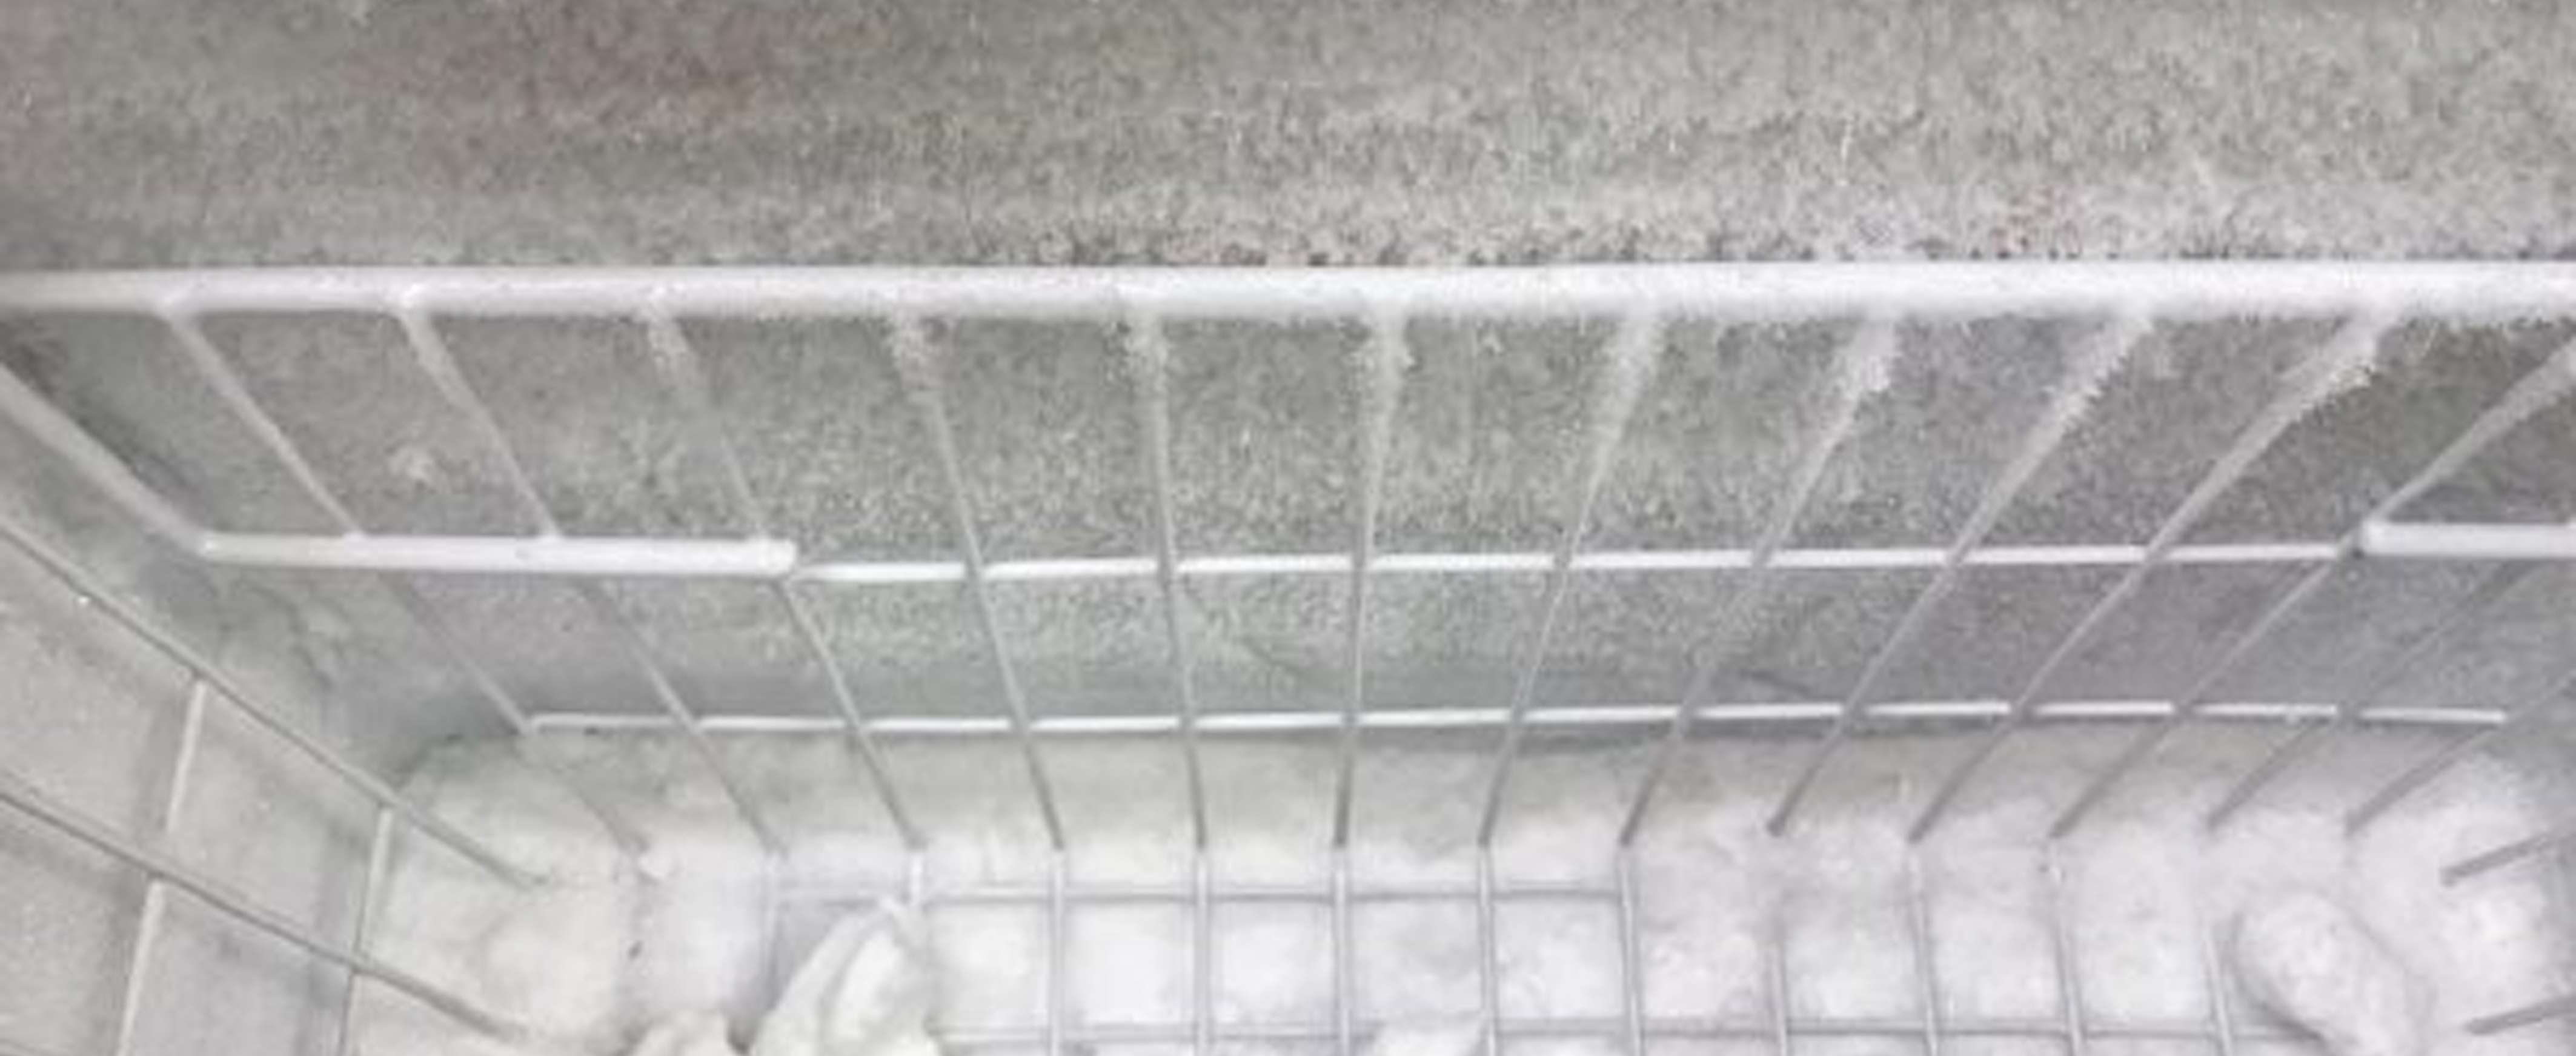 cầu chì nhiệt bị đứt cũng khiến cho tủ lạnh đóng tuyết